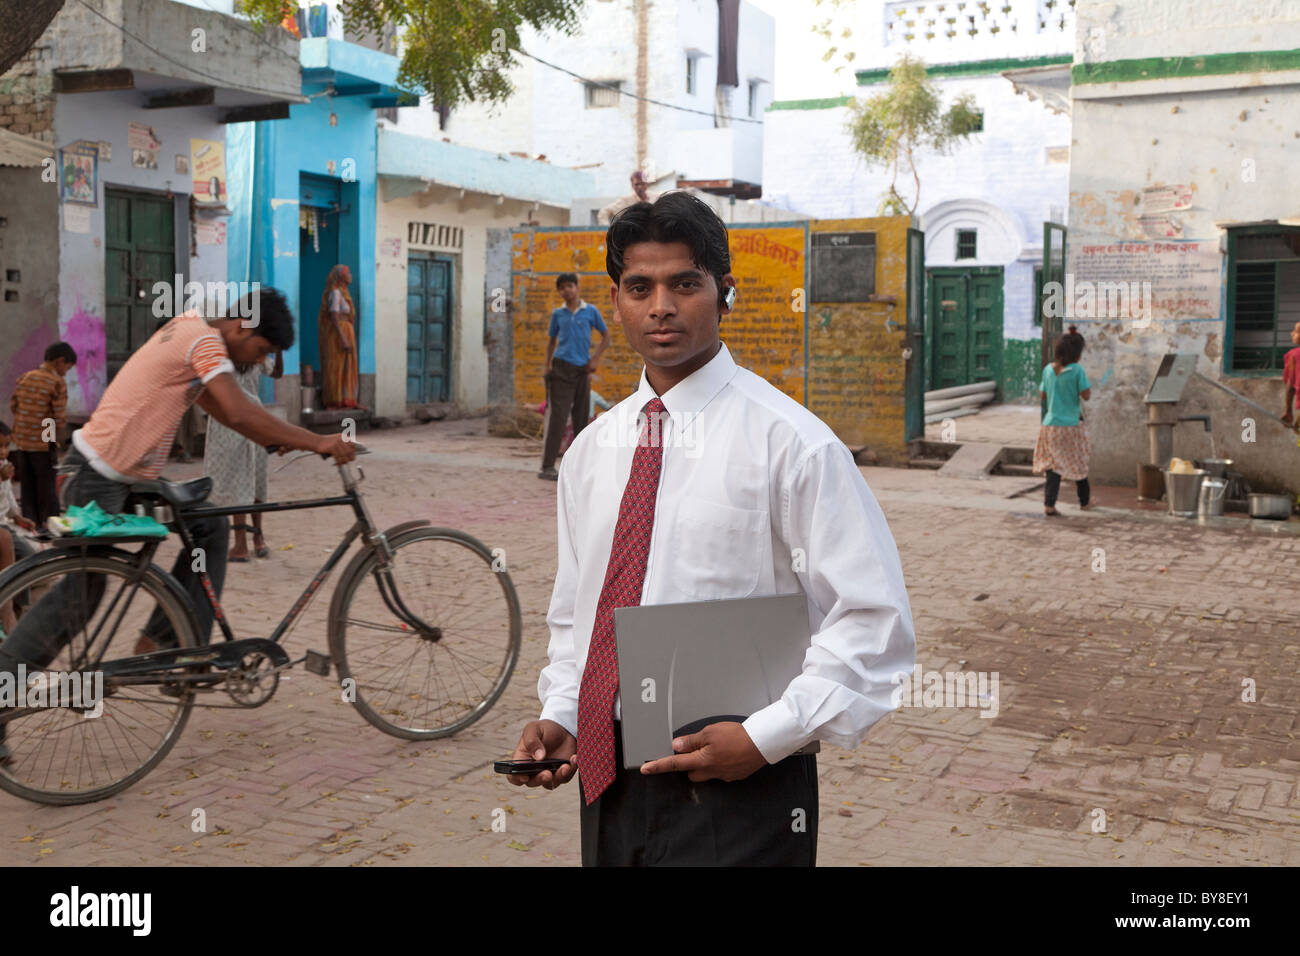 L'Inde, Uttar Pradesh, Agra, homme d'affaires indien en costume et cravate holding laptop et mobiles avec casque Bluetooth Banque D'Images